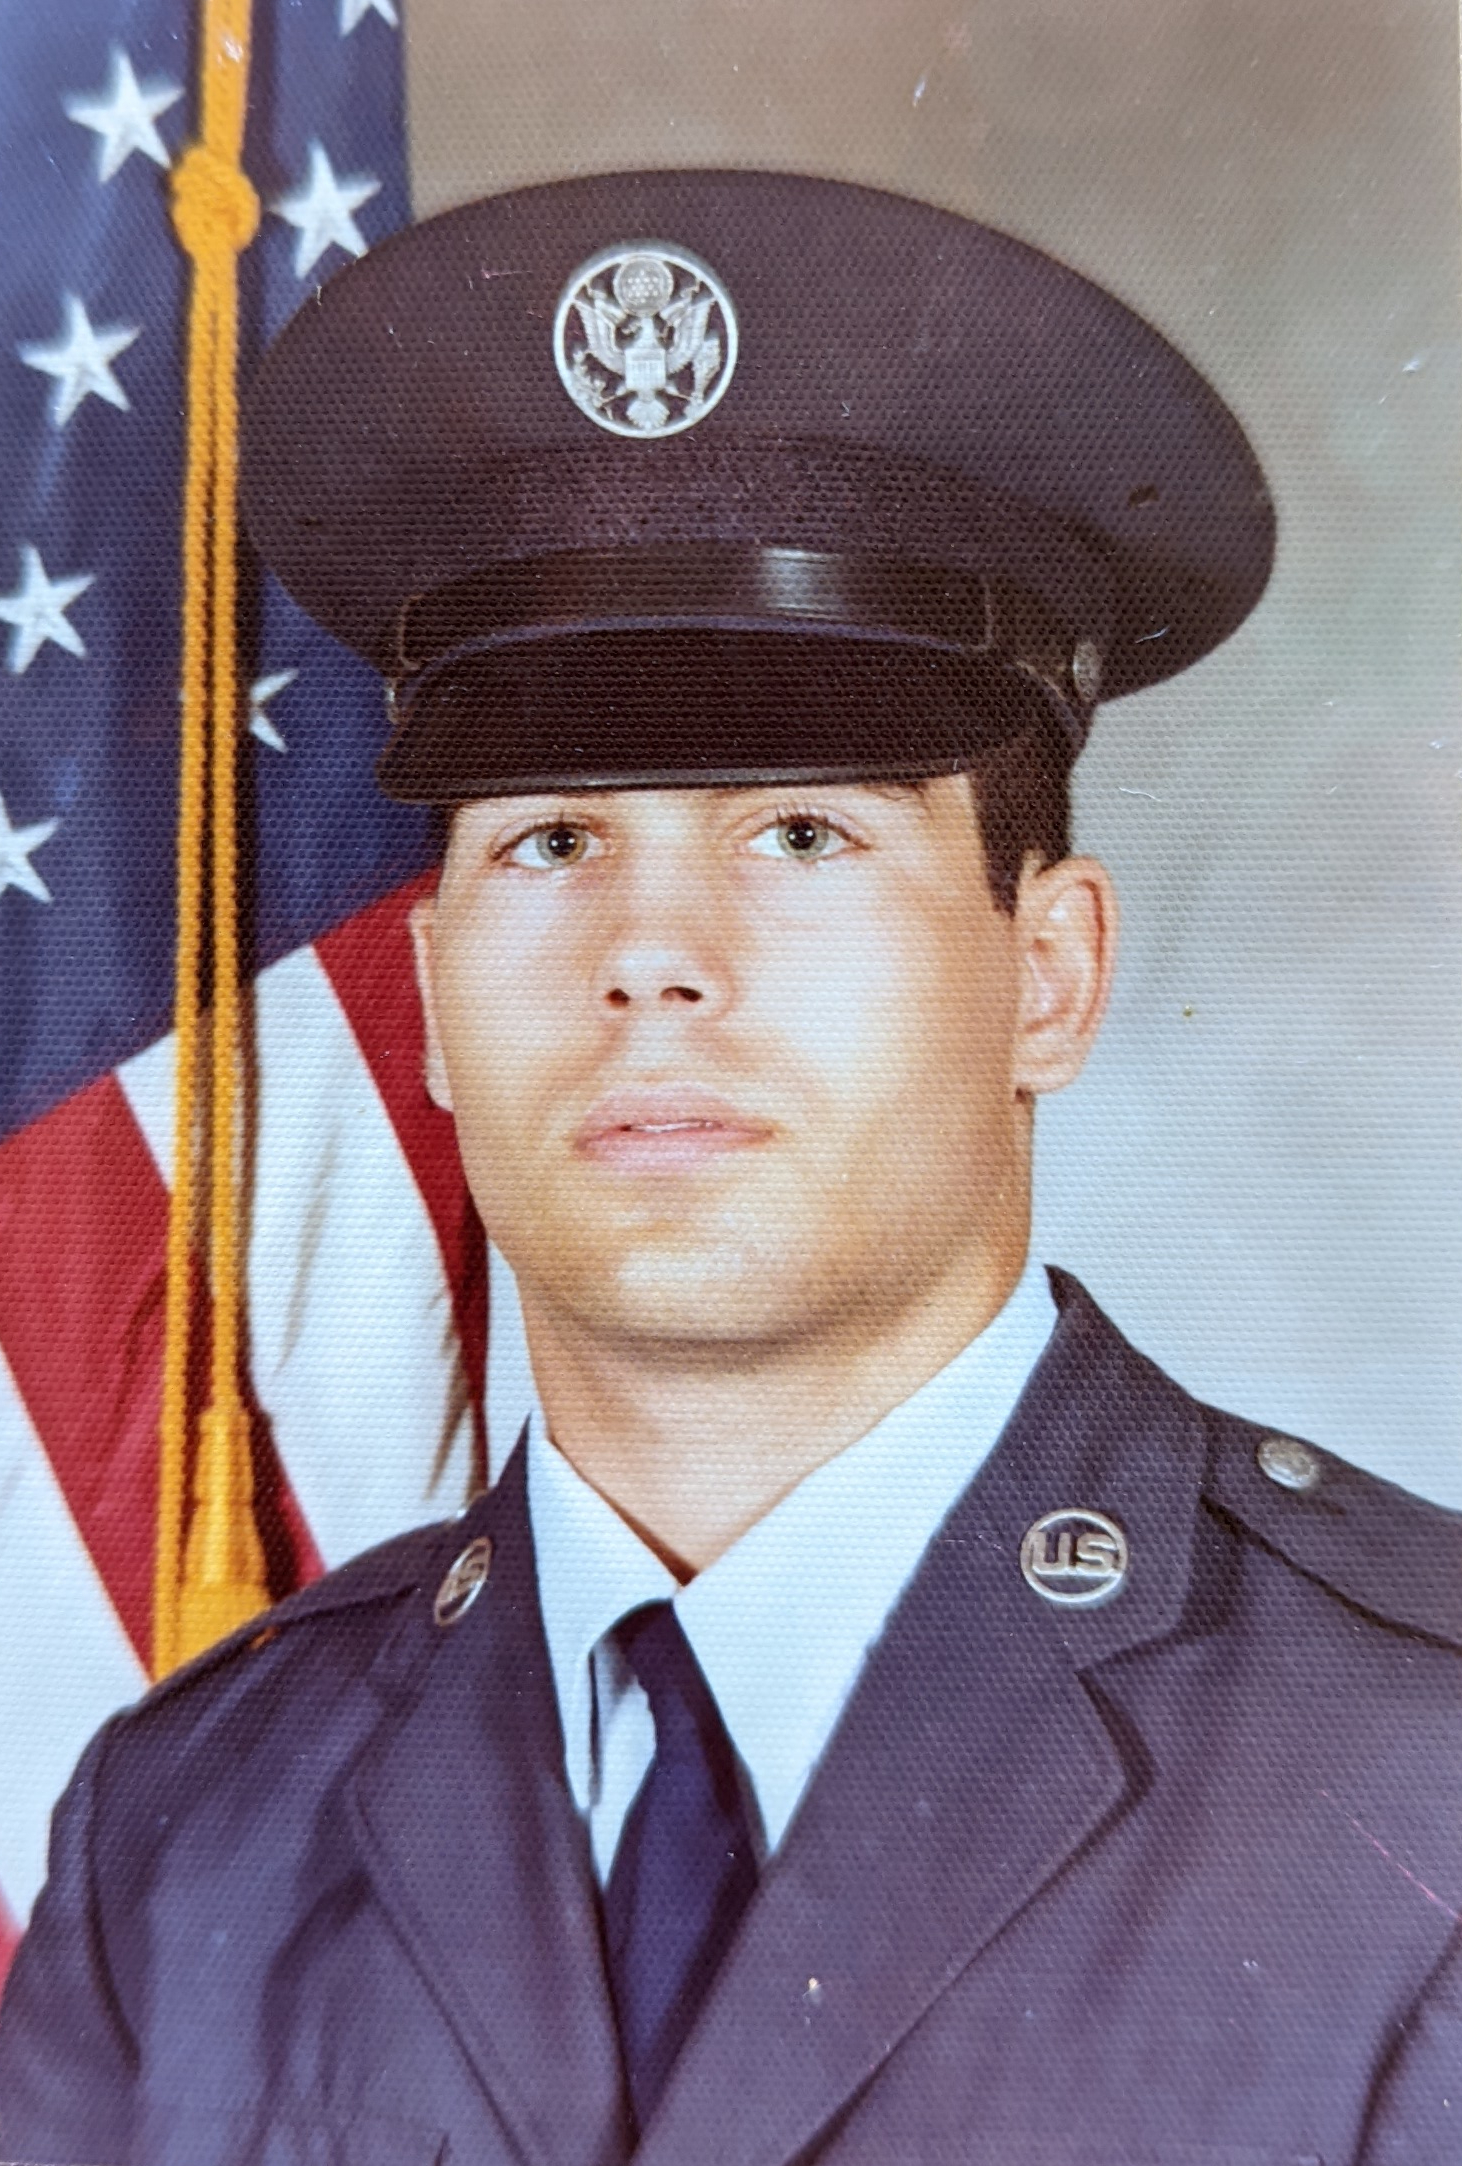 James Bartlett USAF portrait